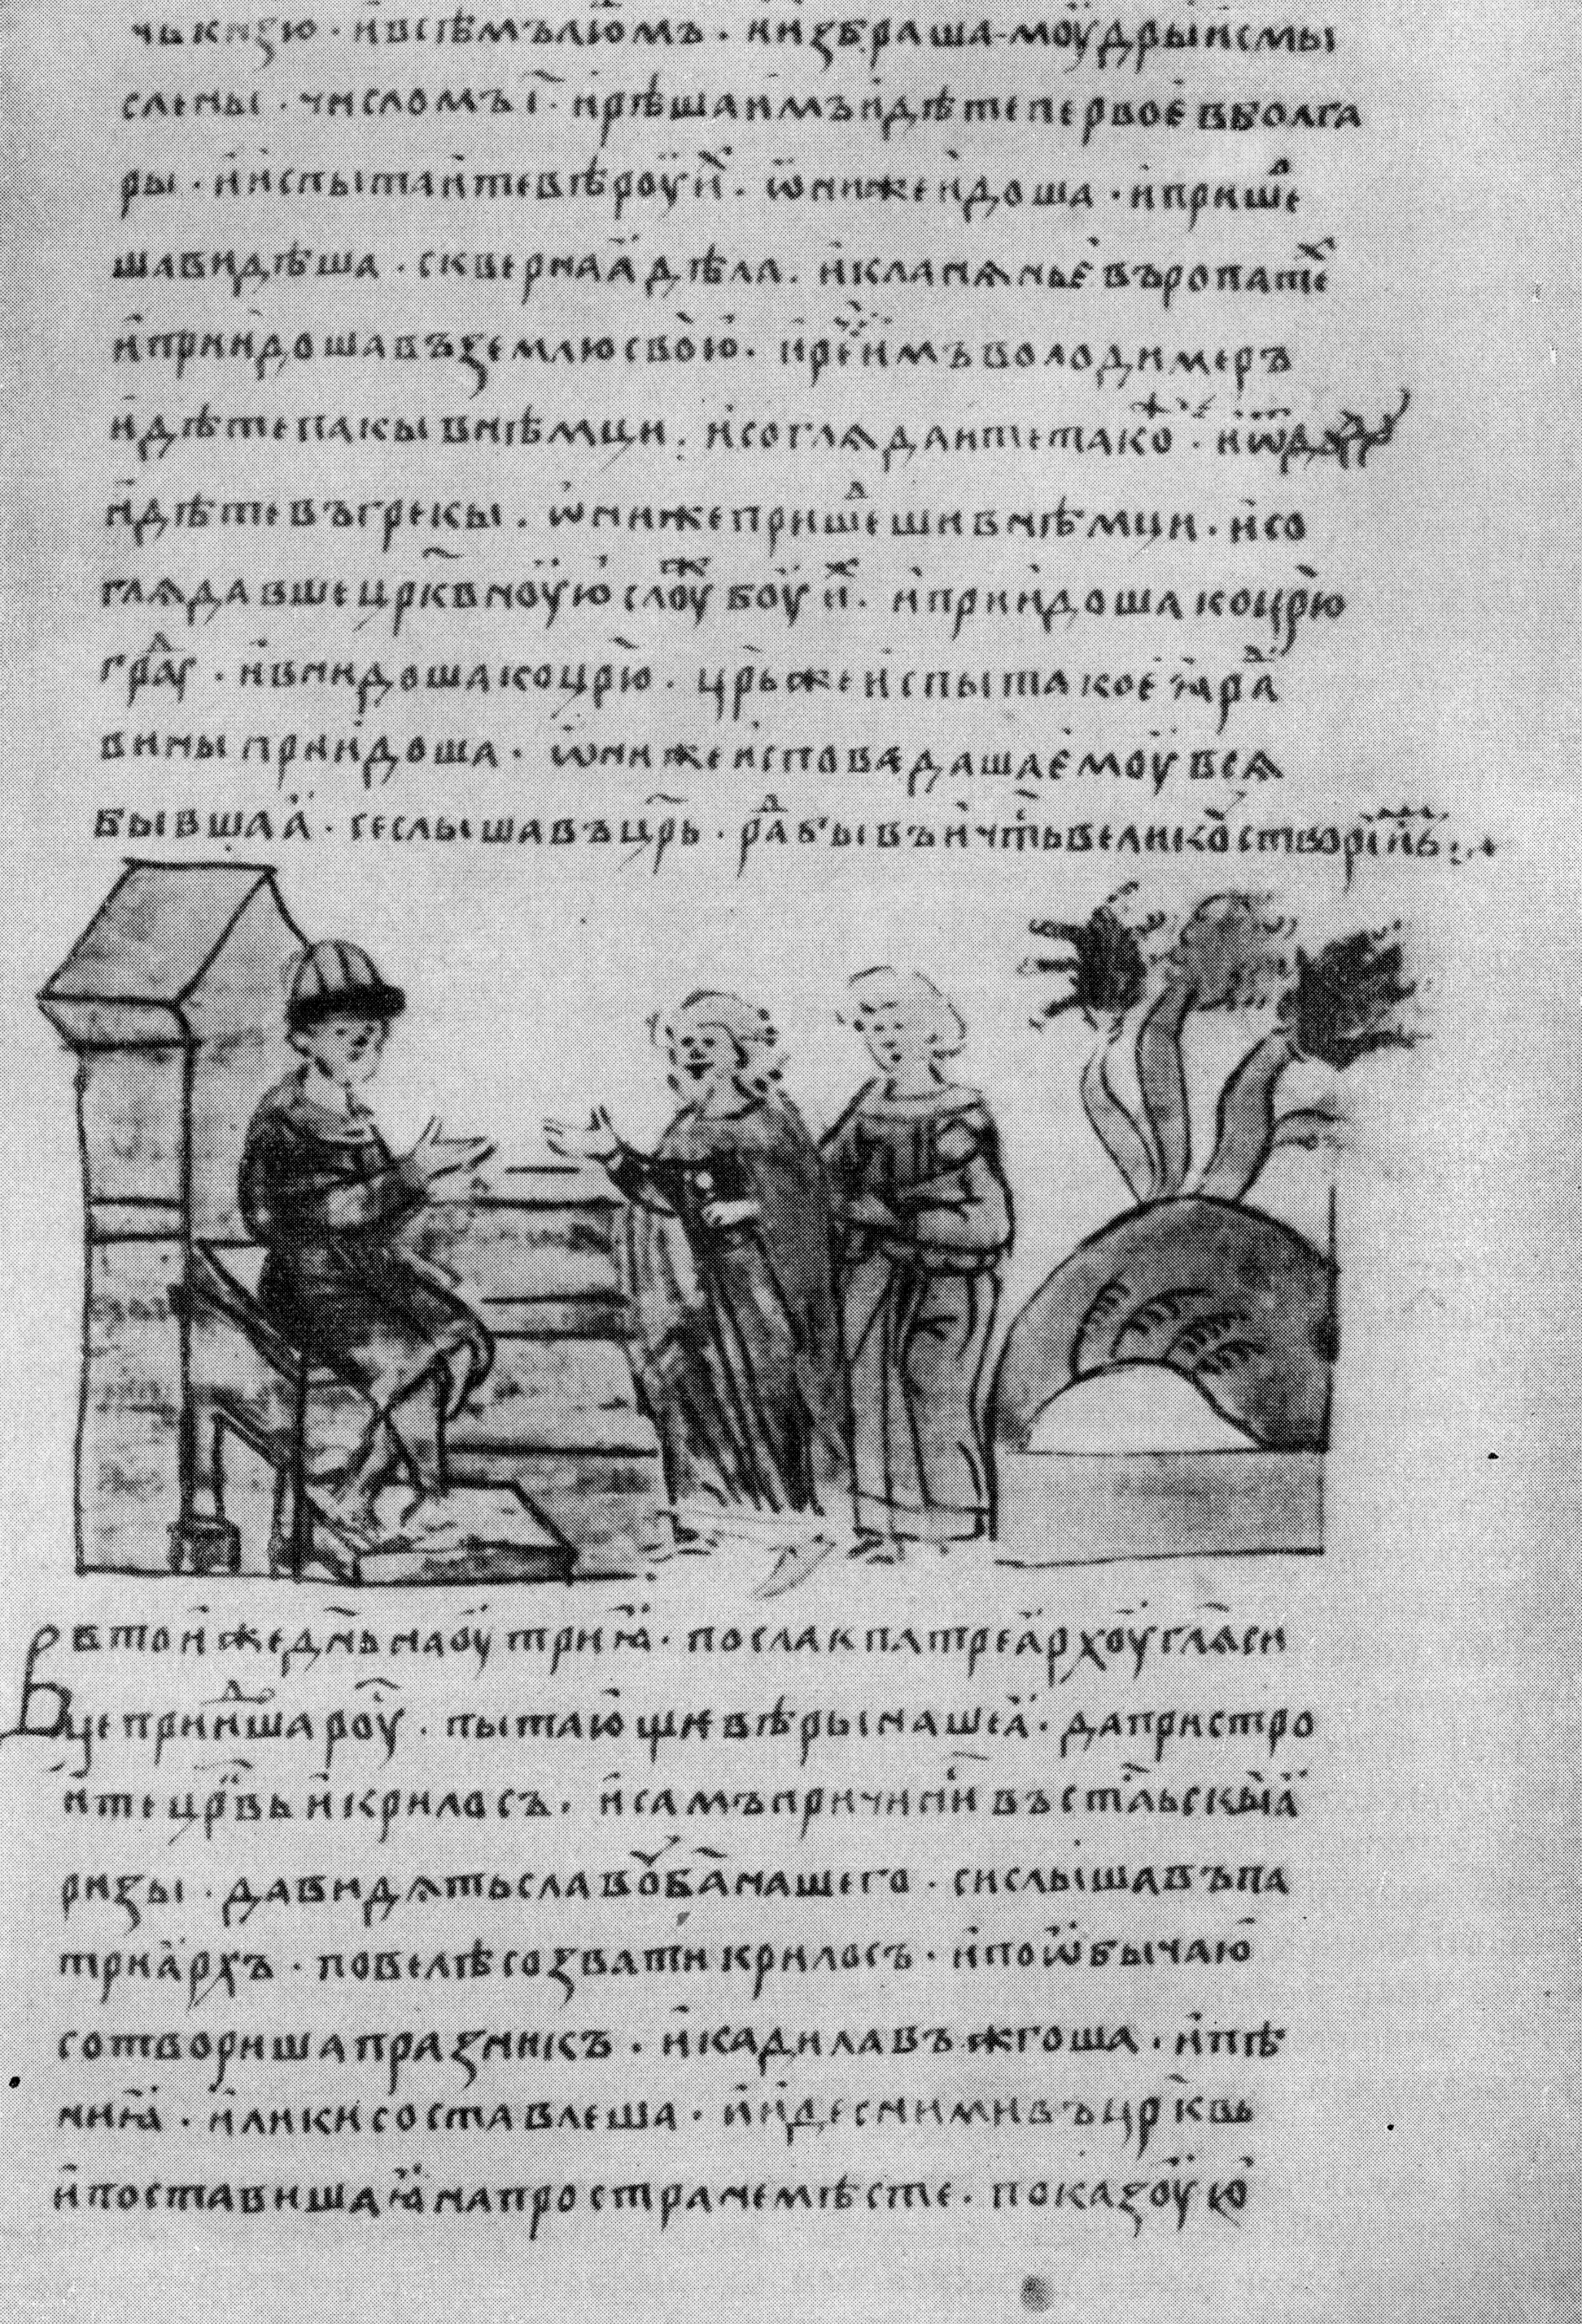 Ilustrace z knihy: Volba víry. Radziwiłłský letopis (15. století), list 59. Knihovna Ruské akademie věd v Petrohradě